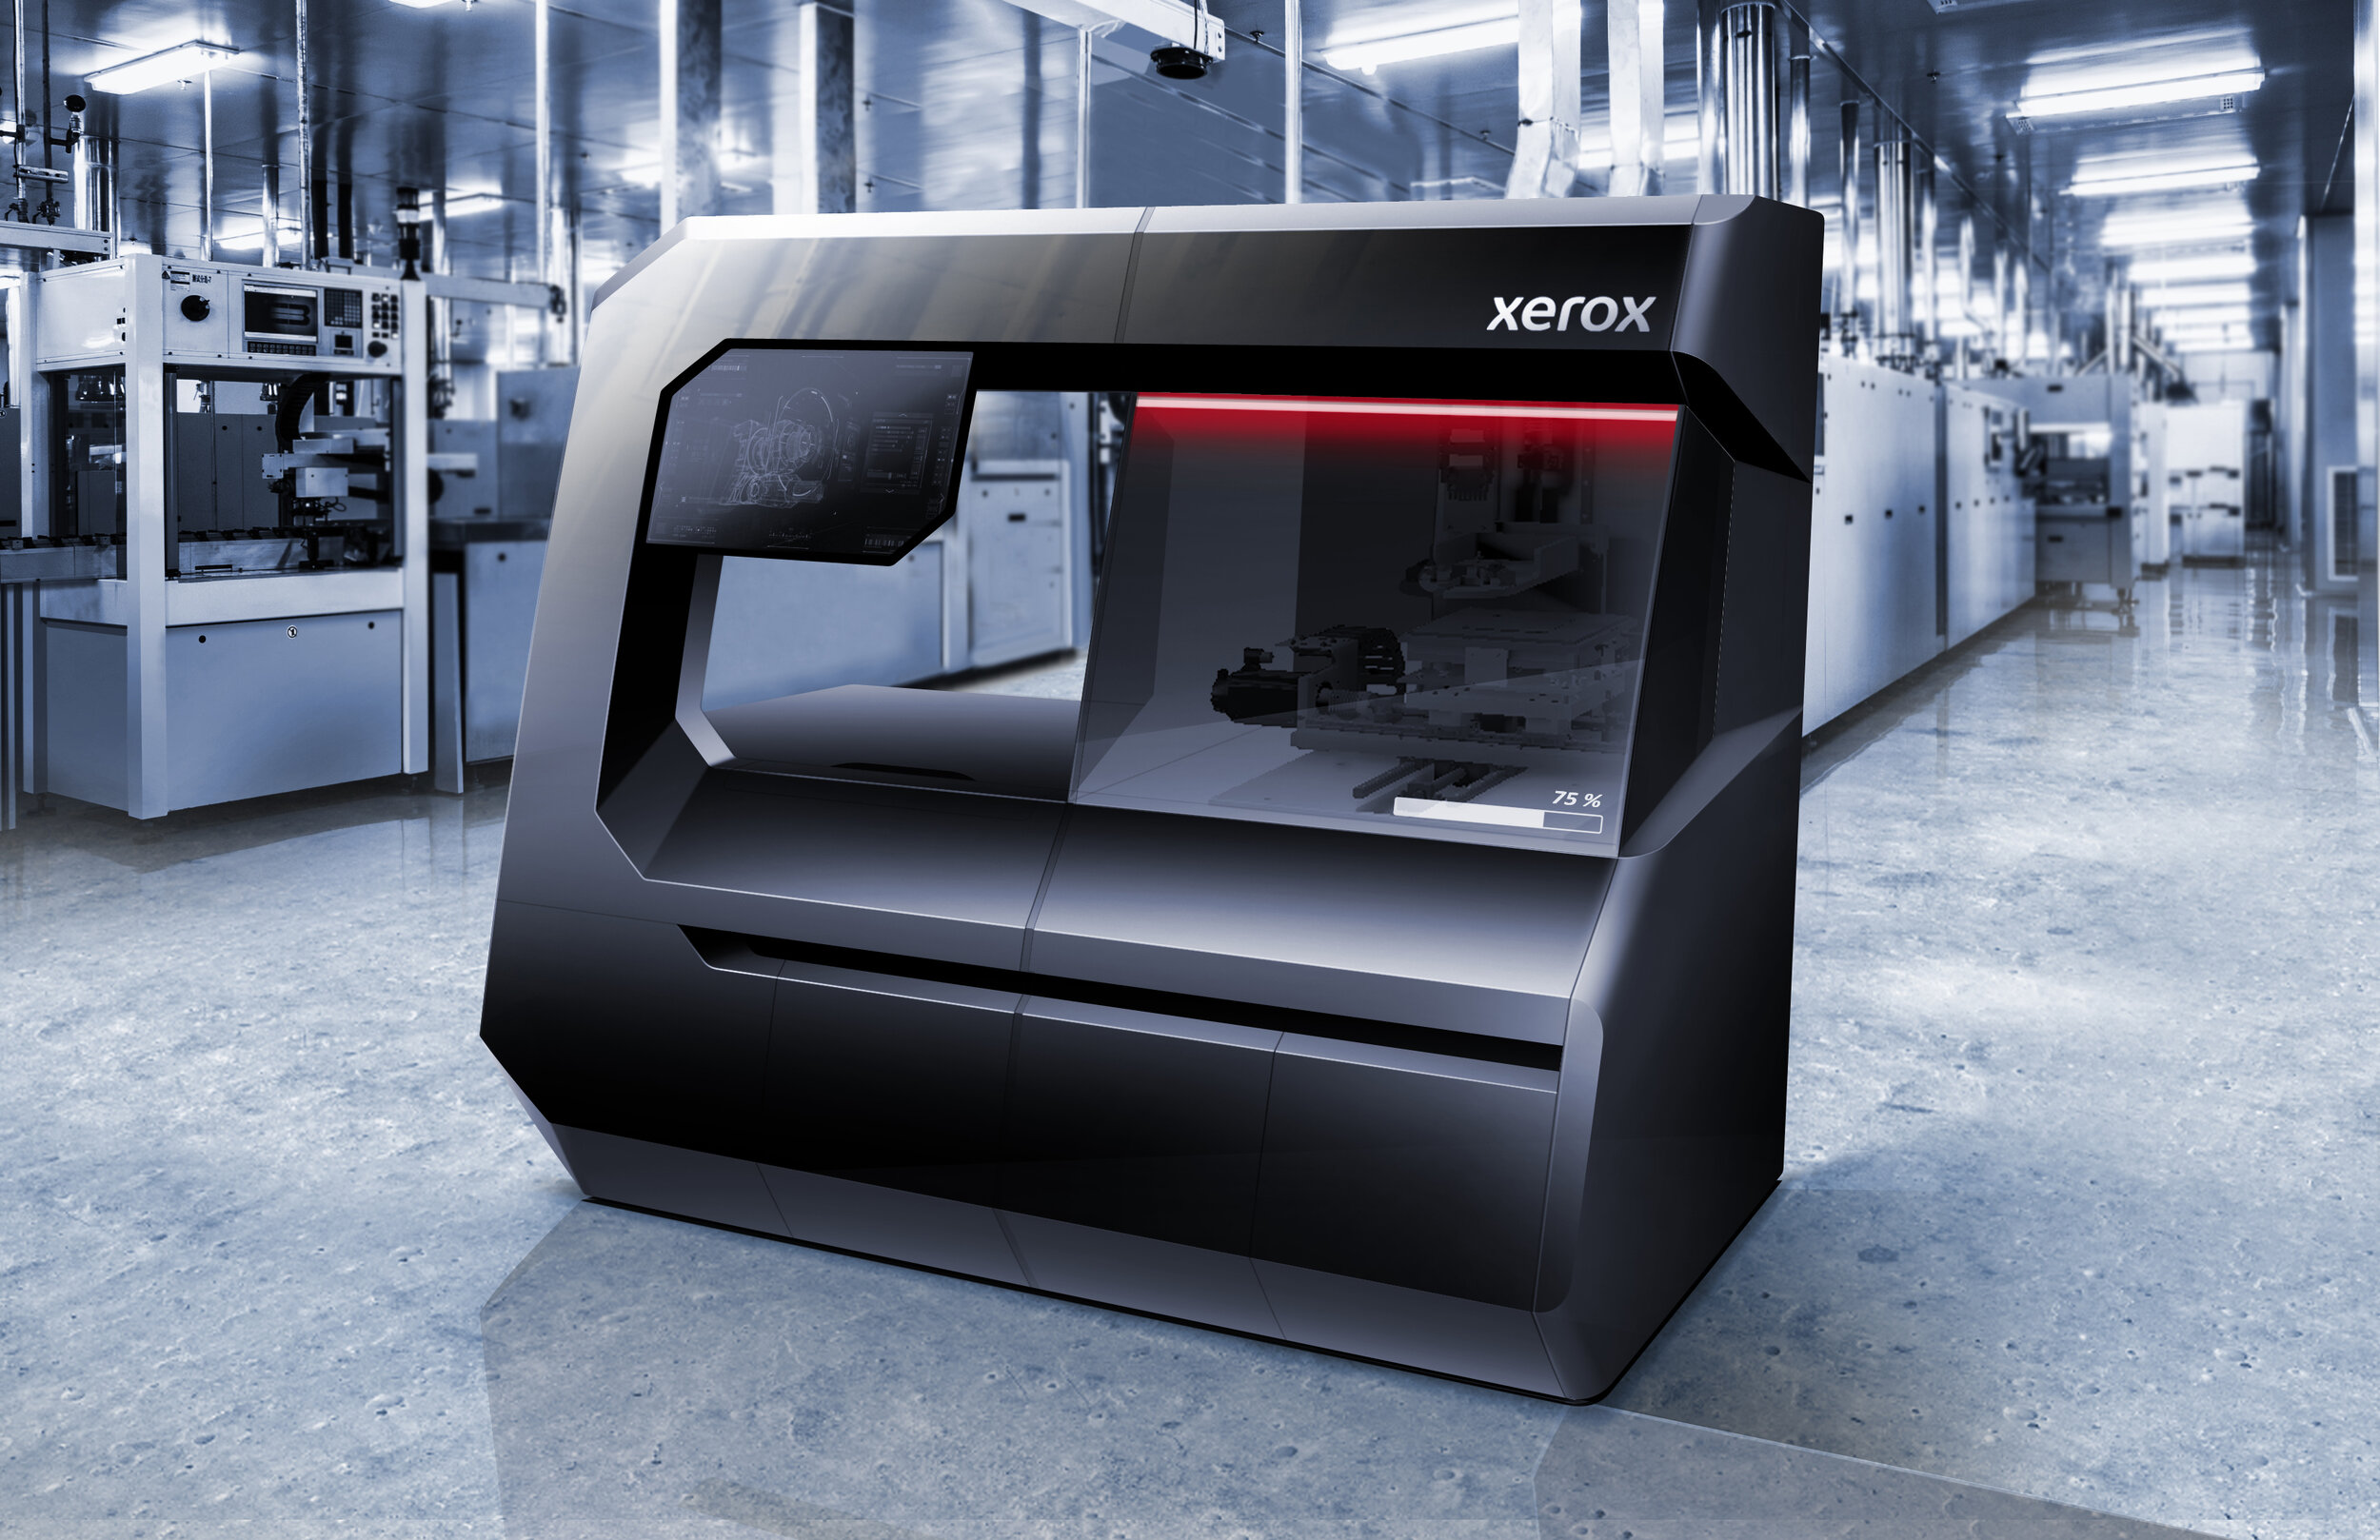 Xerox-3Dprinter-render.jpg